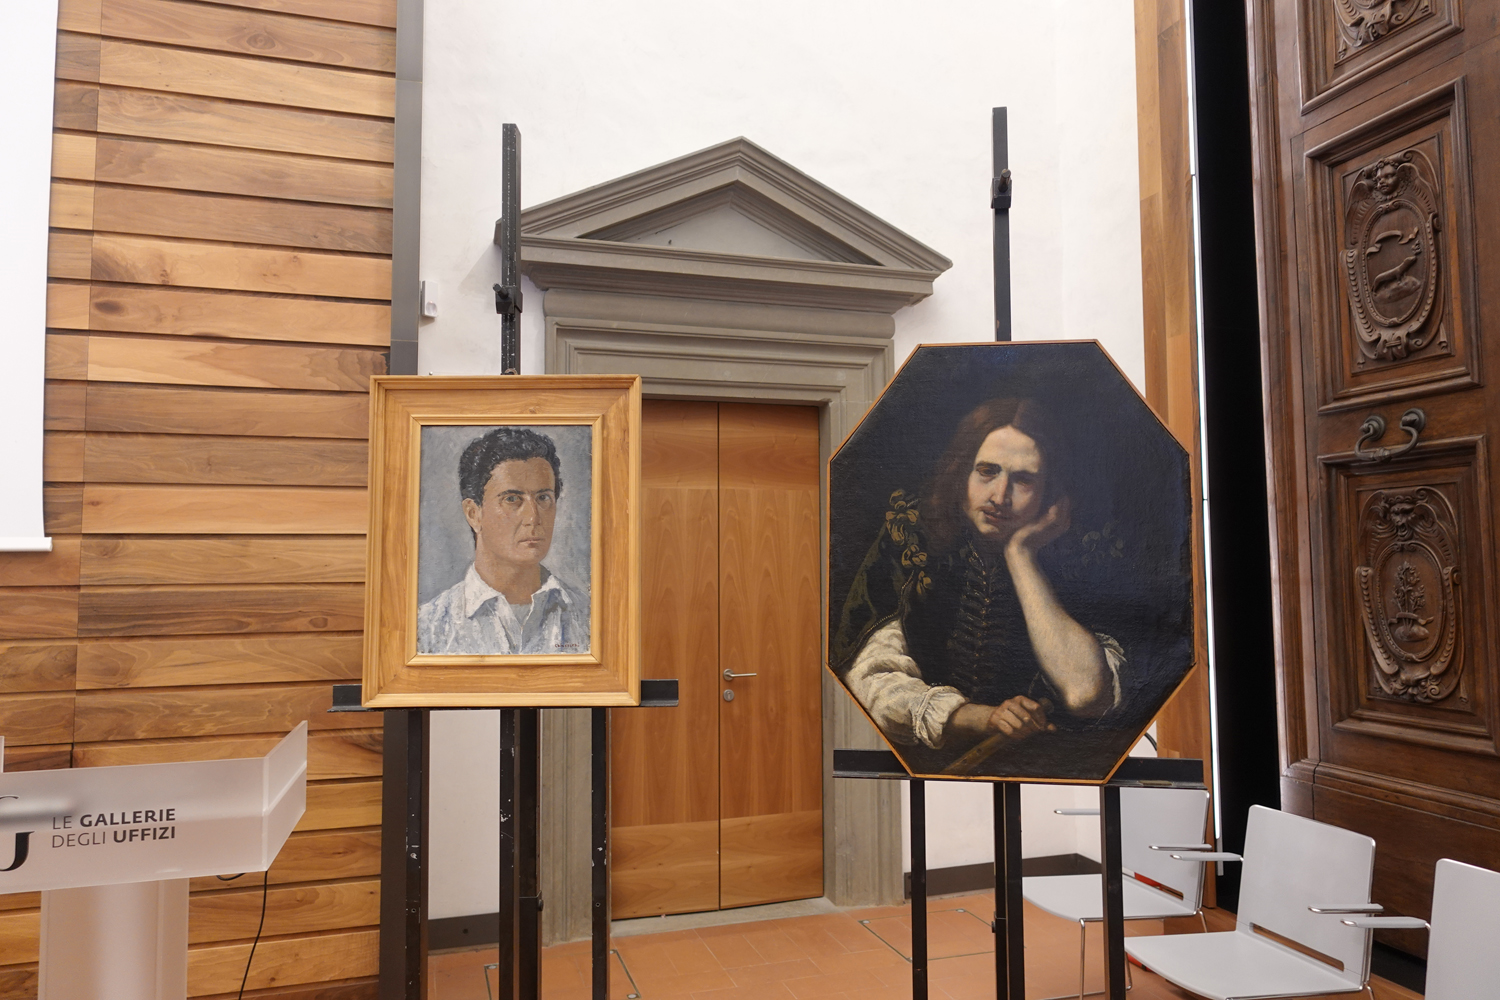 La collezione del professor Carlo del Bravo, raffinato studioso di arte moderna, entra per donazione agli Uffizi